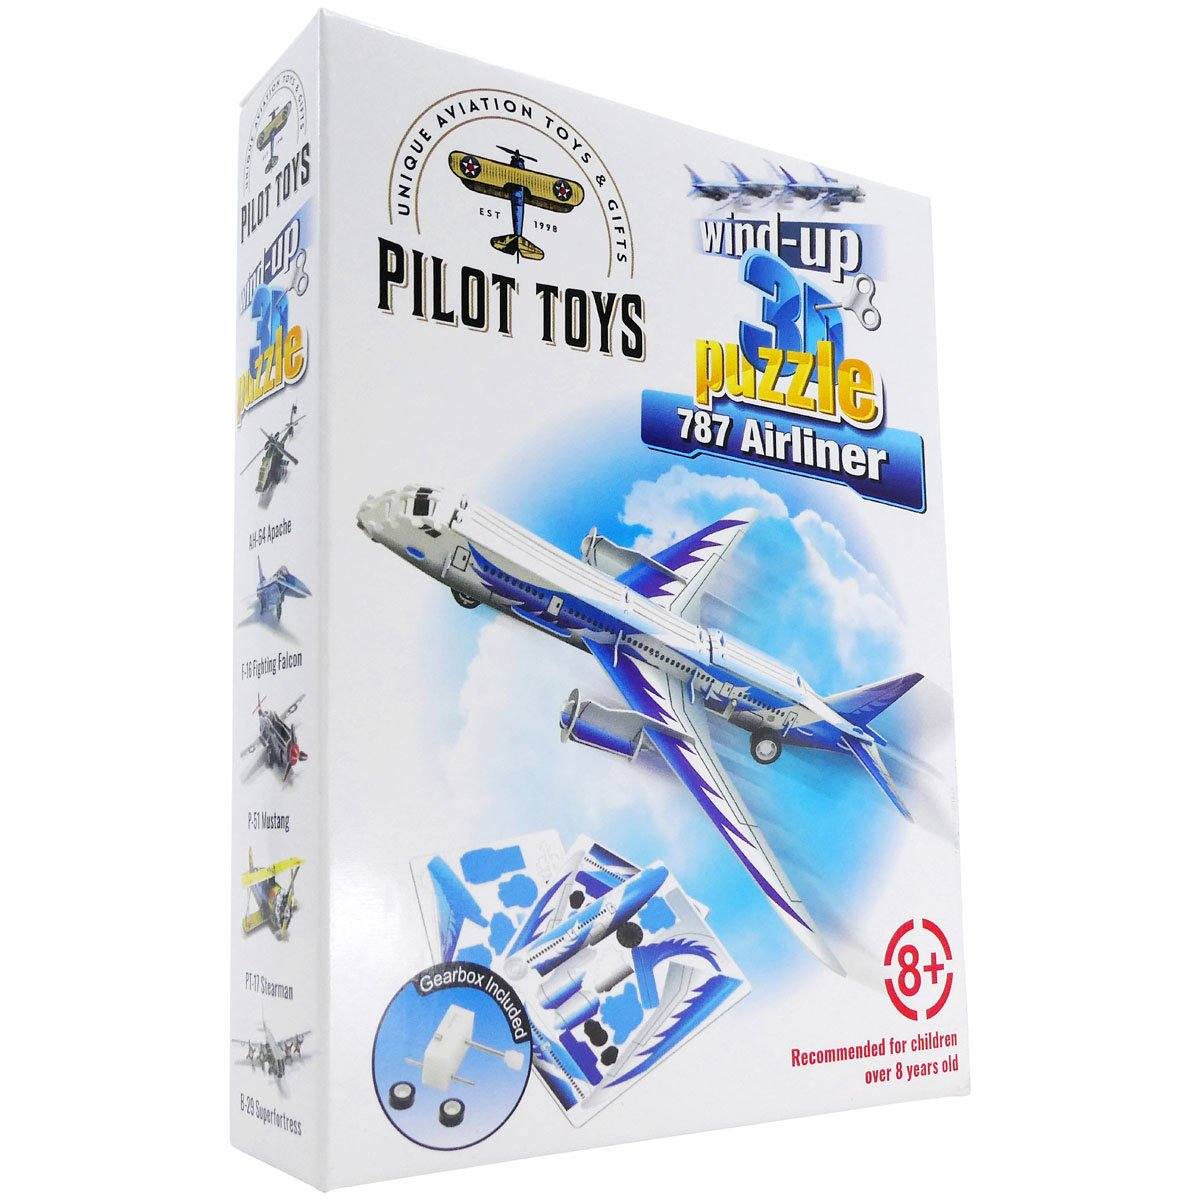 Pilot Toys 787 Airliner Wind-Up 3D Puzzle - PilotMall.com